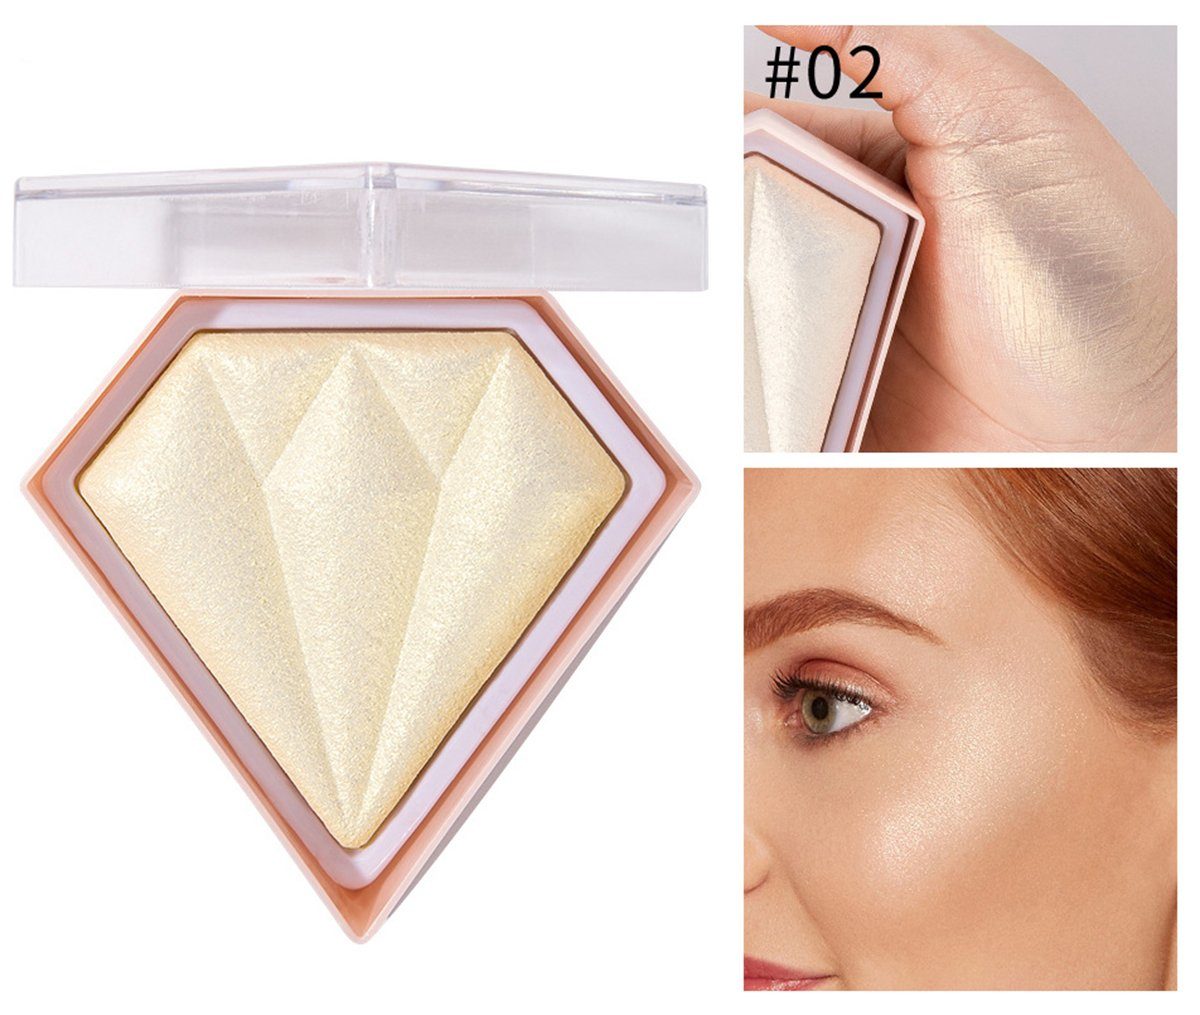 und Nude- Haiaveng natürliches Konturen-Make-up Highlighter Diamant-Leuchtpuder-Palette, glänzendes gold für